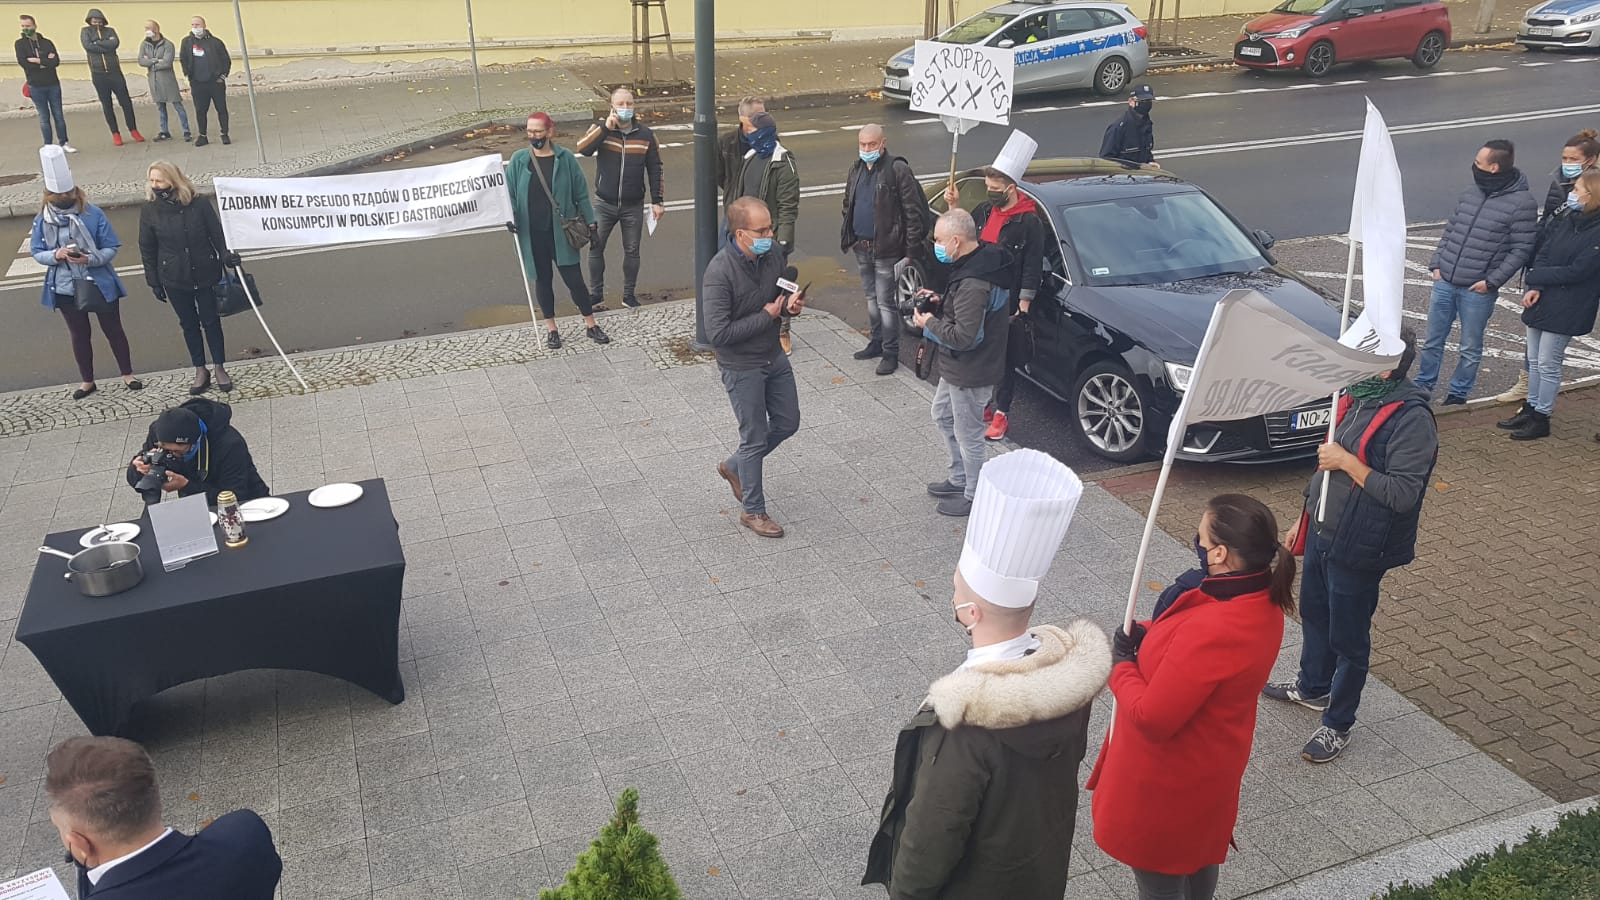 W Olsztynie trwa protest branży gastronomicznej. Tłumy pod urzędem